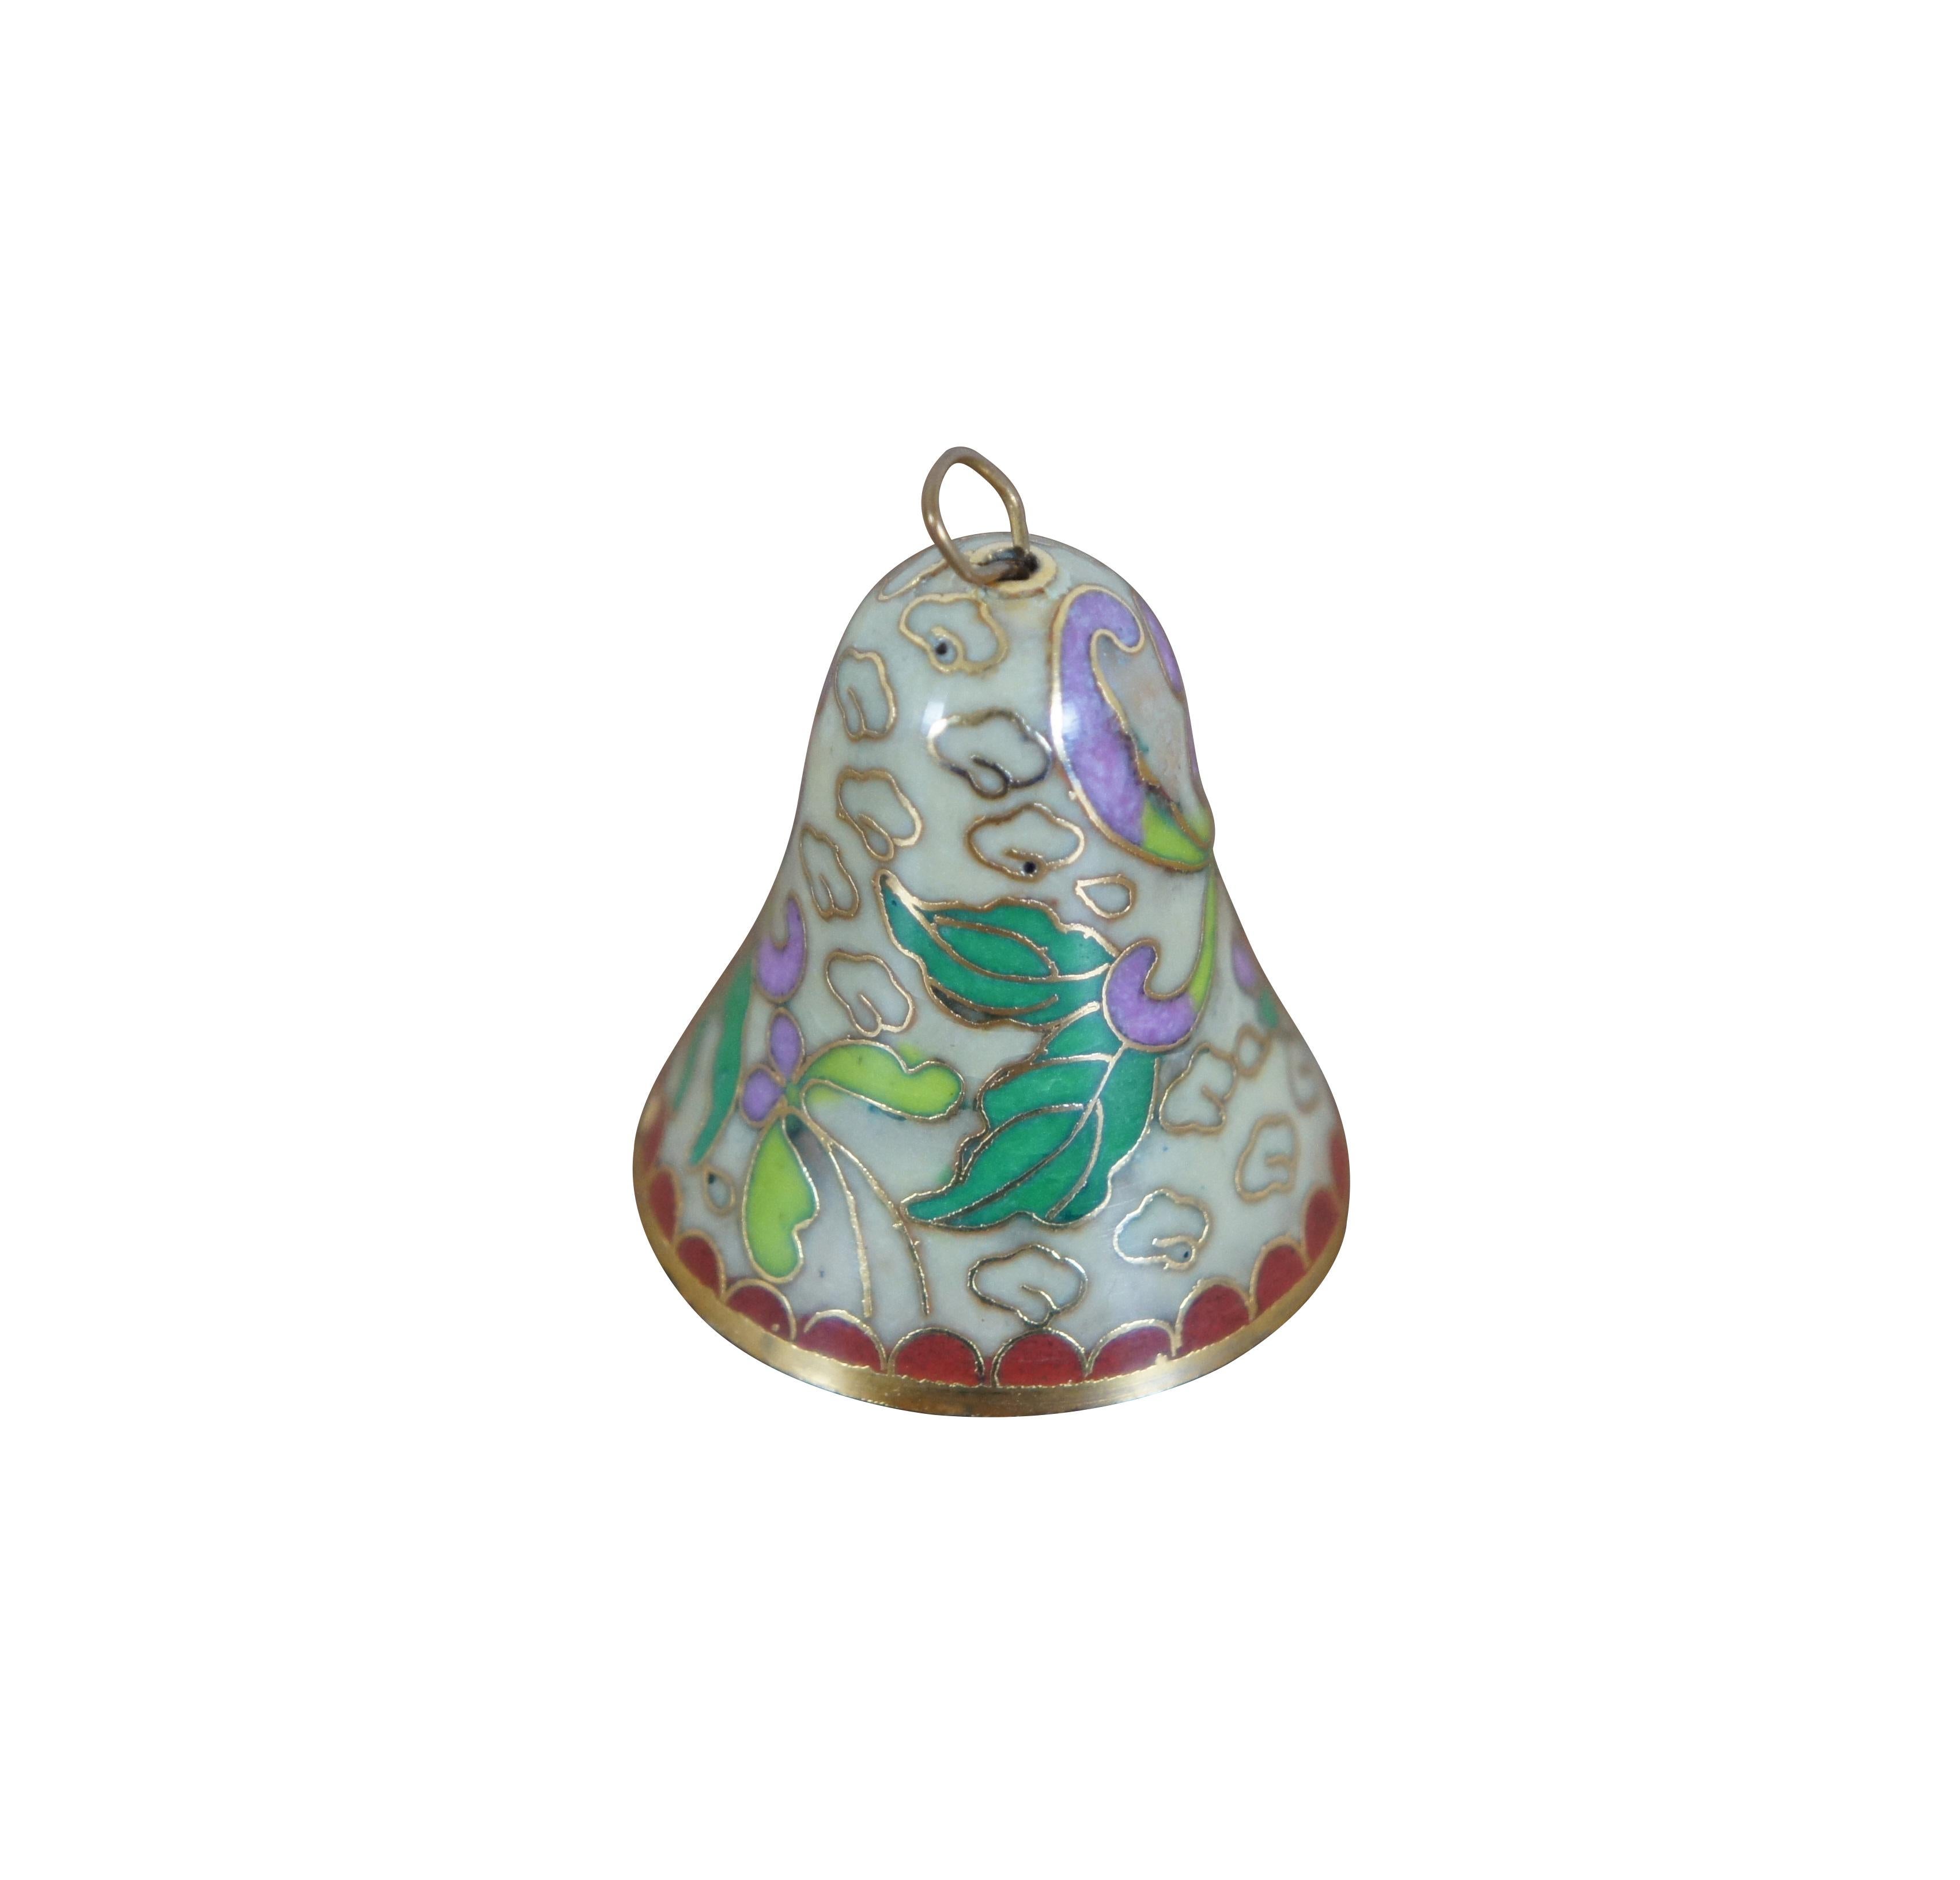 Chinesische Vintage-Glocke aus Cloisonné-Email auf Messing mit einem Muster aus wirbelnden violetten und grünen Blumen auf einem beigen Wolkenhintergrund und rotem Wellenschliff. 

Abmessungen:
1,125